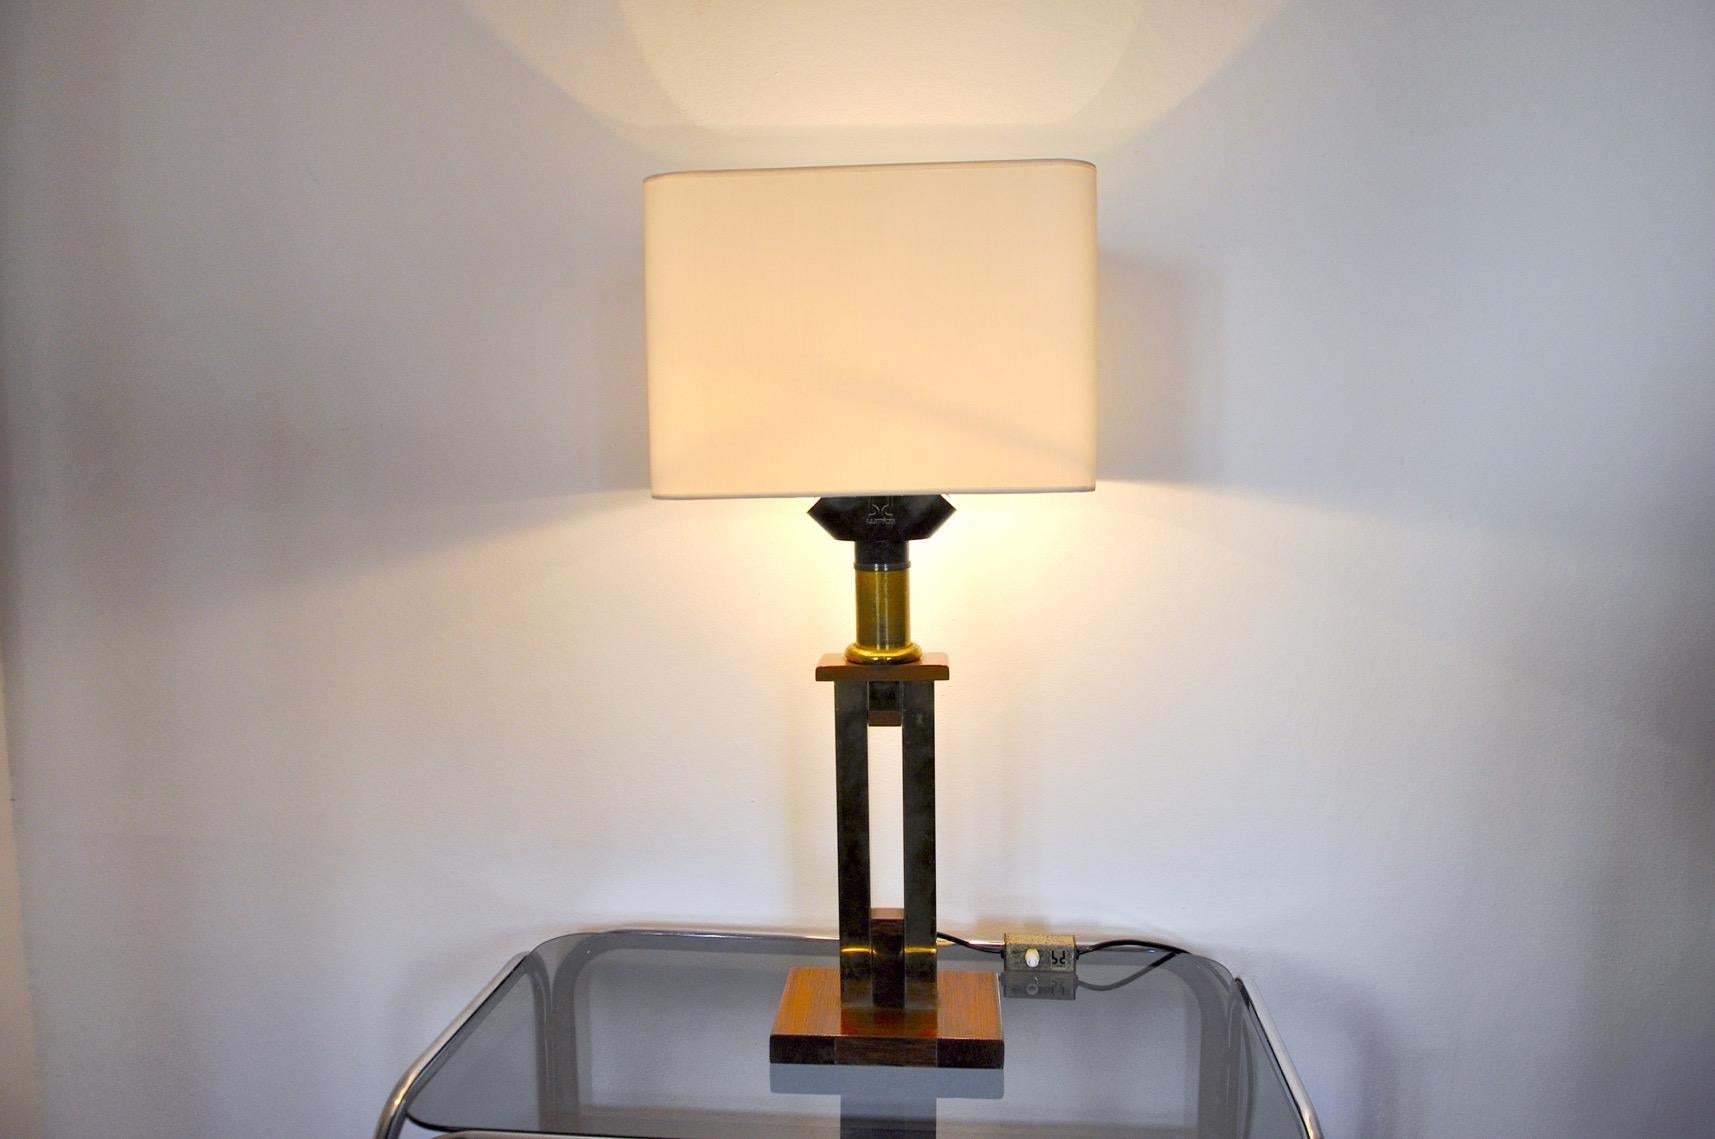 Très belle et rare lampe lumica en forme de bande dessinée dont le design est attribué à Willy Rizzo, produite en Espagne dans les années 1970. Lampe unique par sa structure, comparable à une œuvre d'art. L'abat-jour a été réalisé sur mesure avec